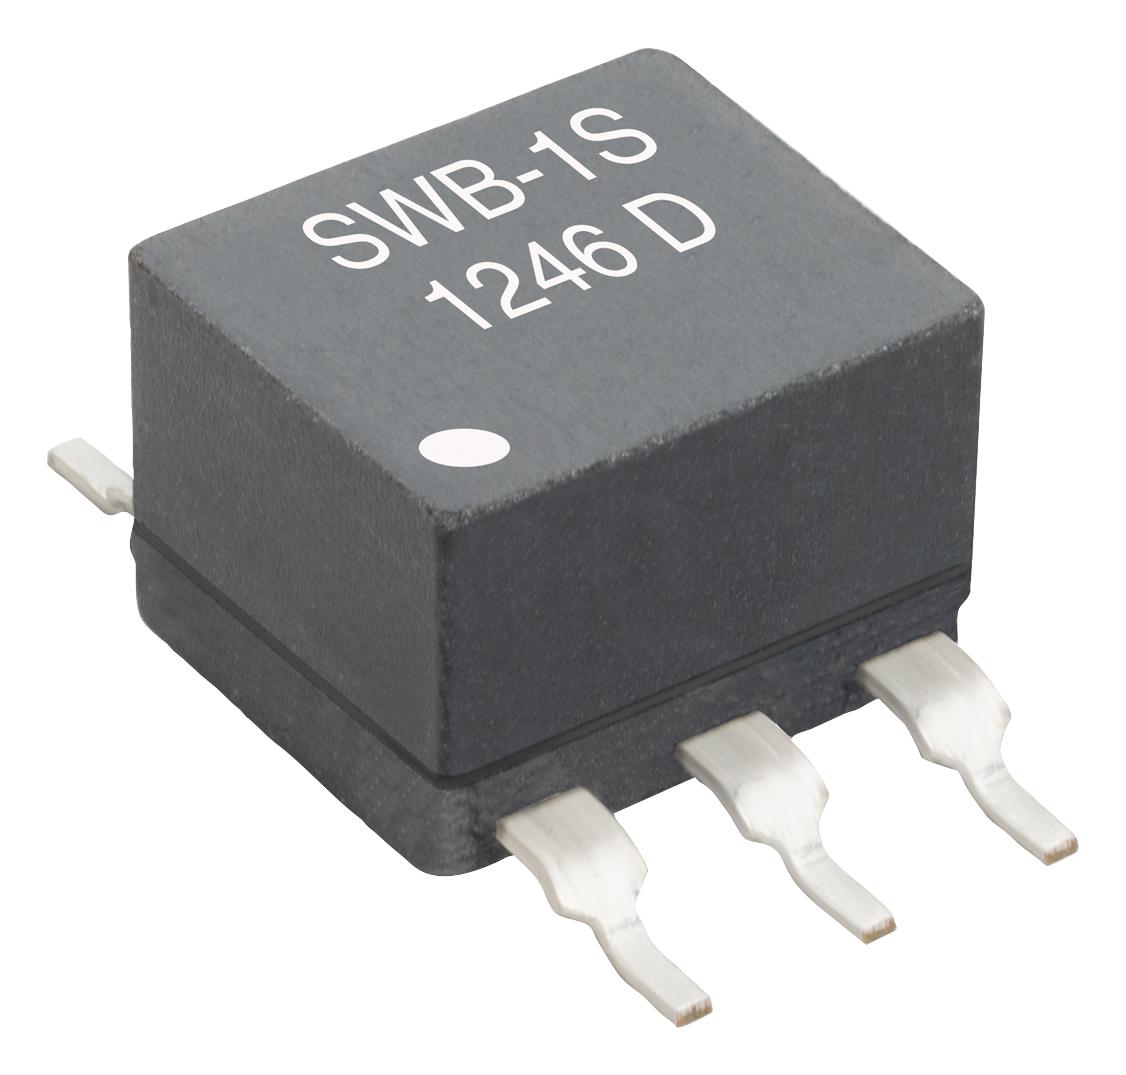 SWB3010-SMLD RF TRANSFORMER, 780UH COILCRAFT